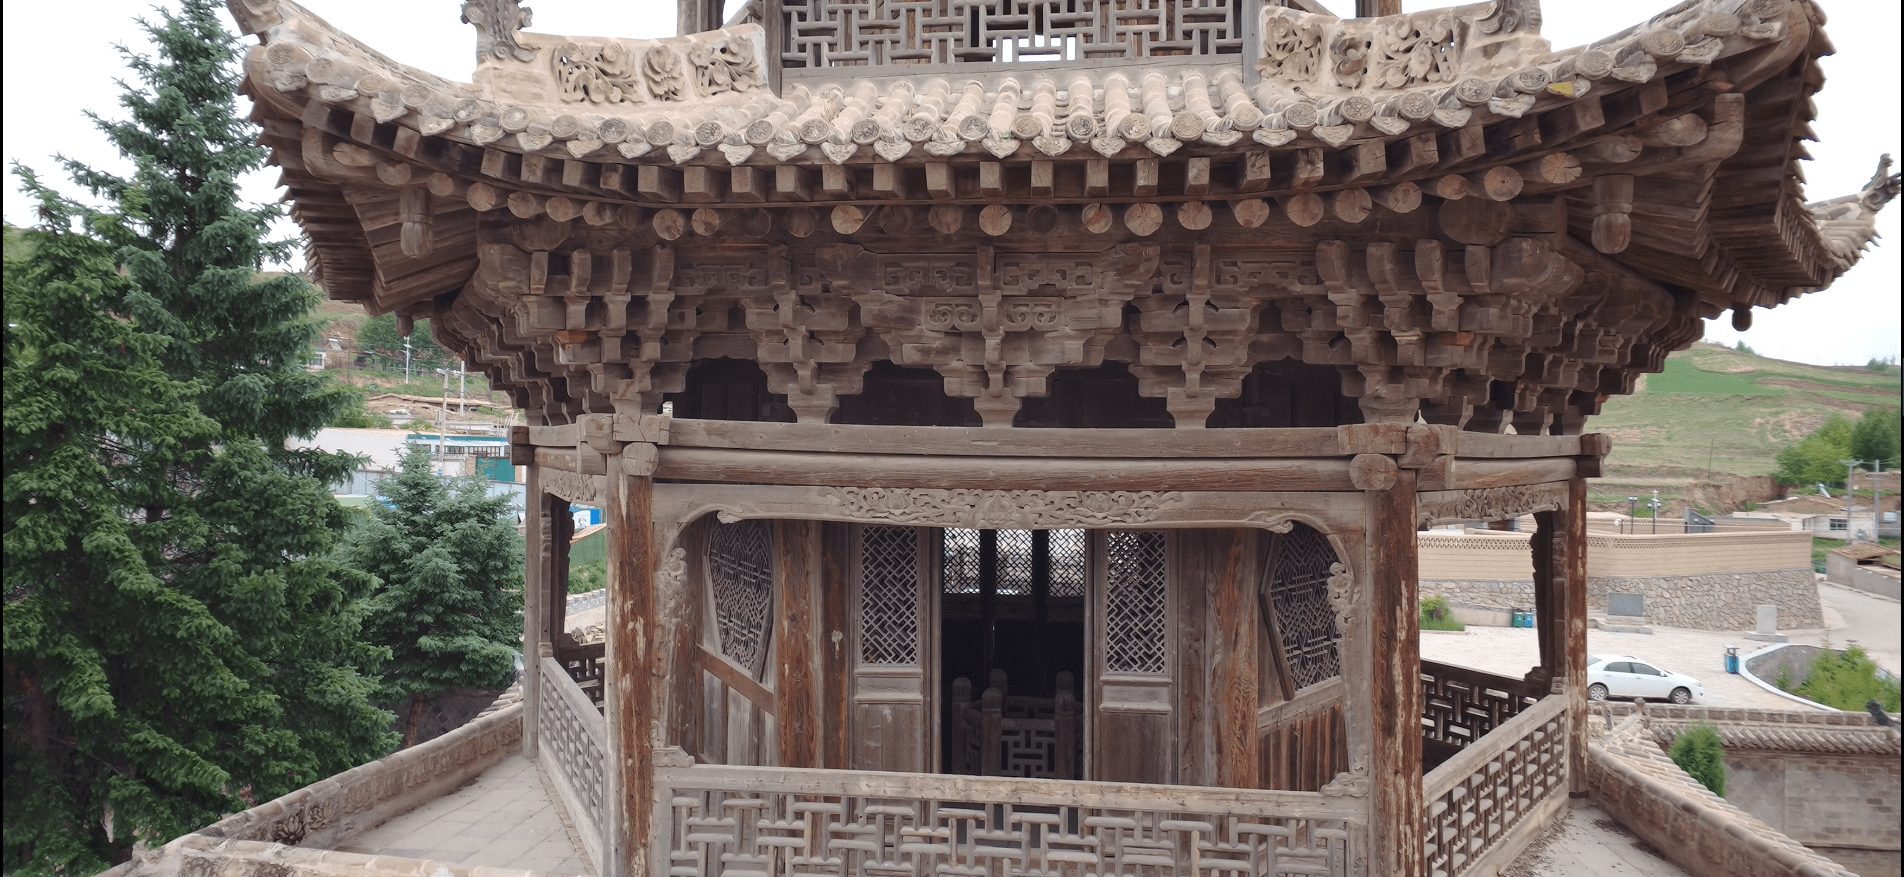 中国古建筑,砖雕—青砖上的不朽画卷!七